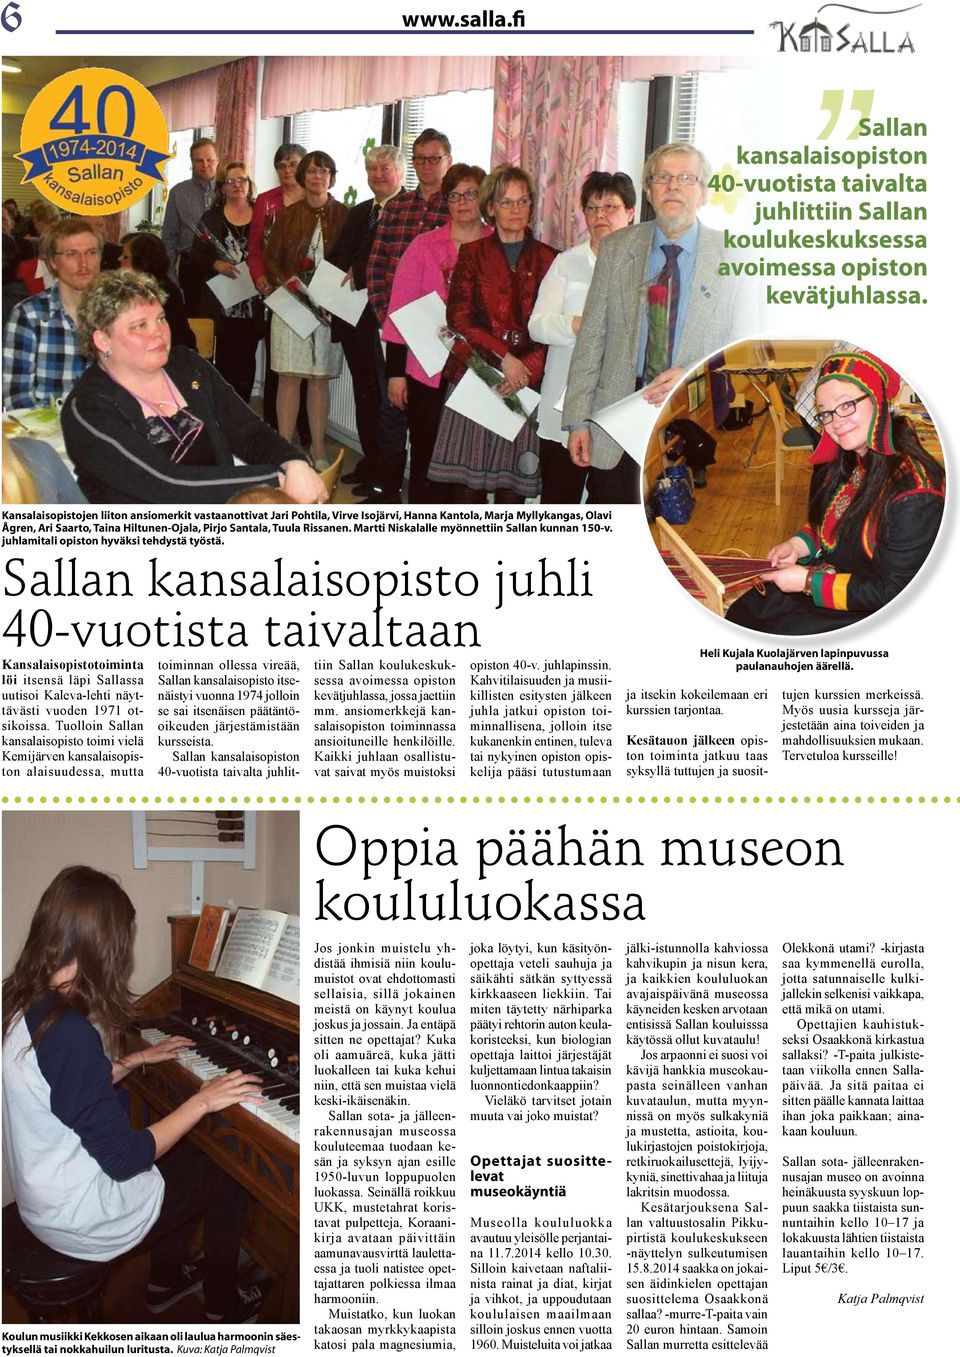 Martti Niskalalle myönnettiin Sallan kunnan 150-v. juhlamitali opiston hyväksi tehdystä työstä.